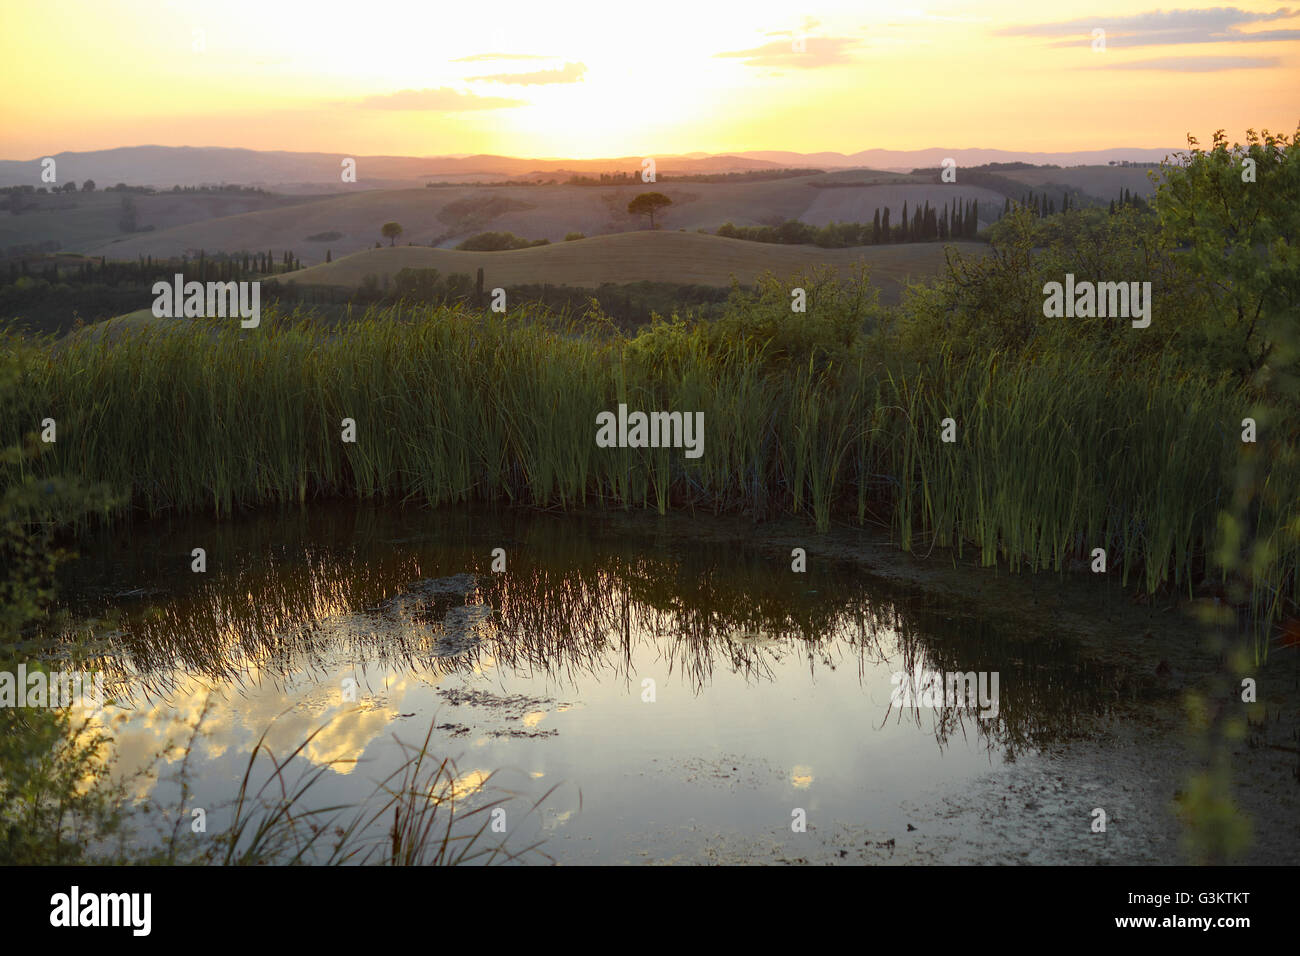 Étang et lointain paysage vallonné au lever du soleil, Toscane, Italie Banque D'Images